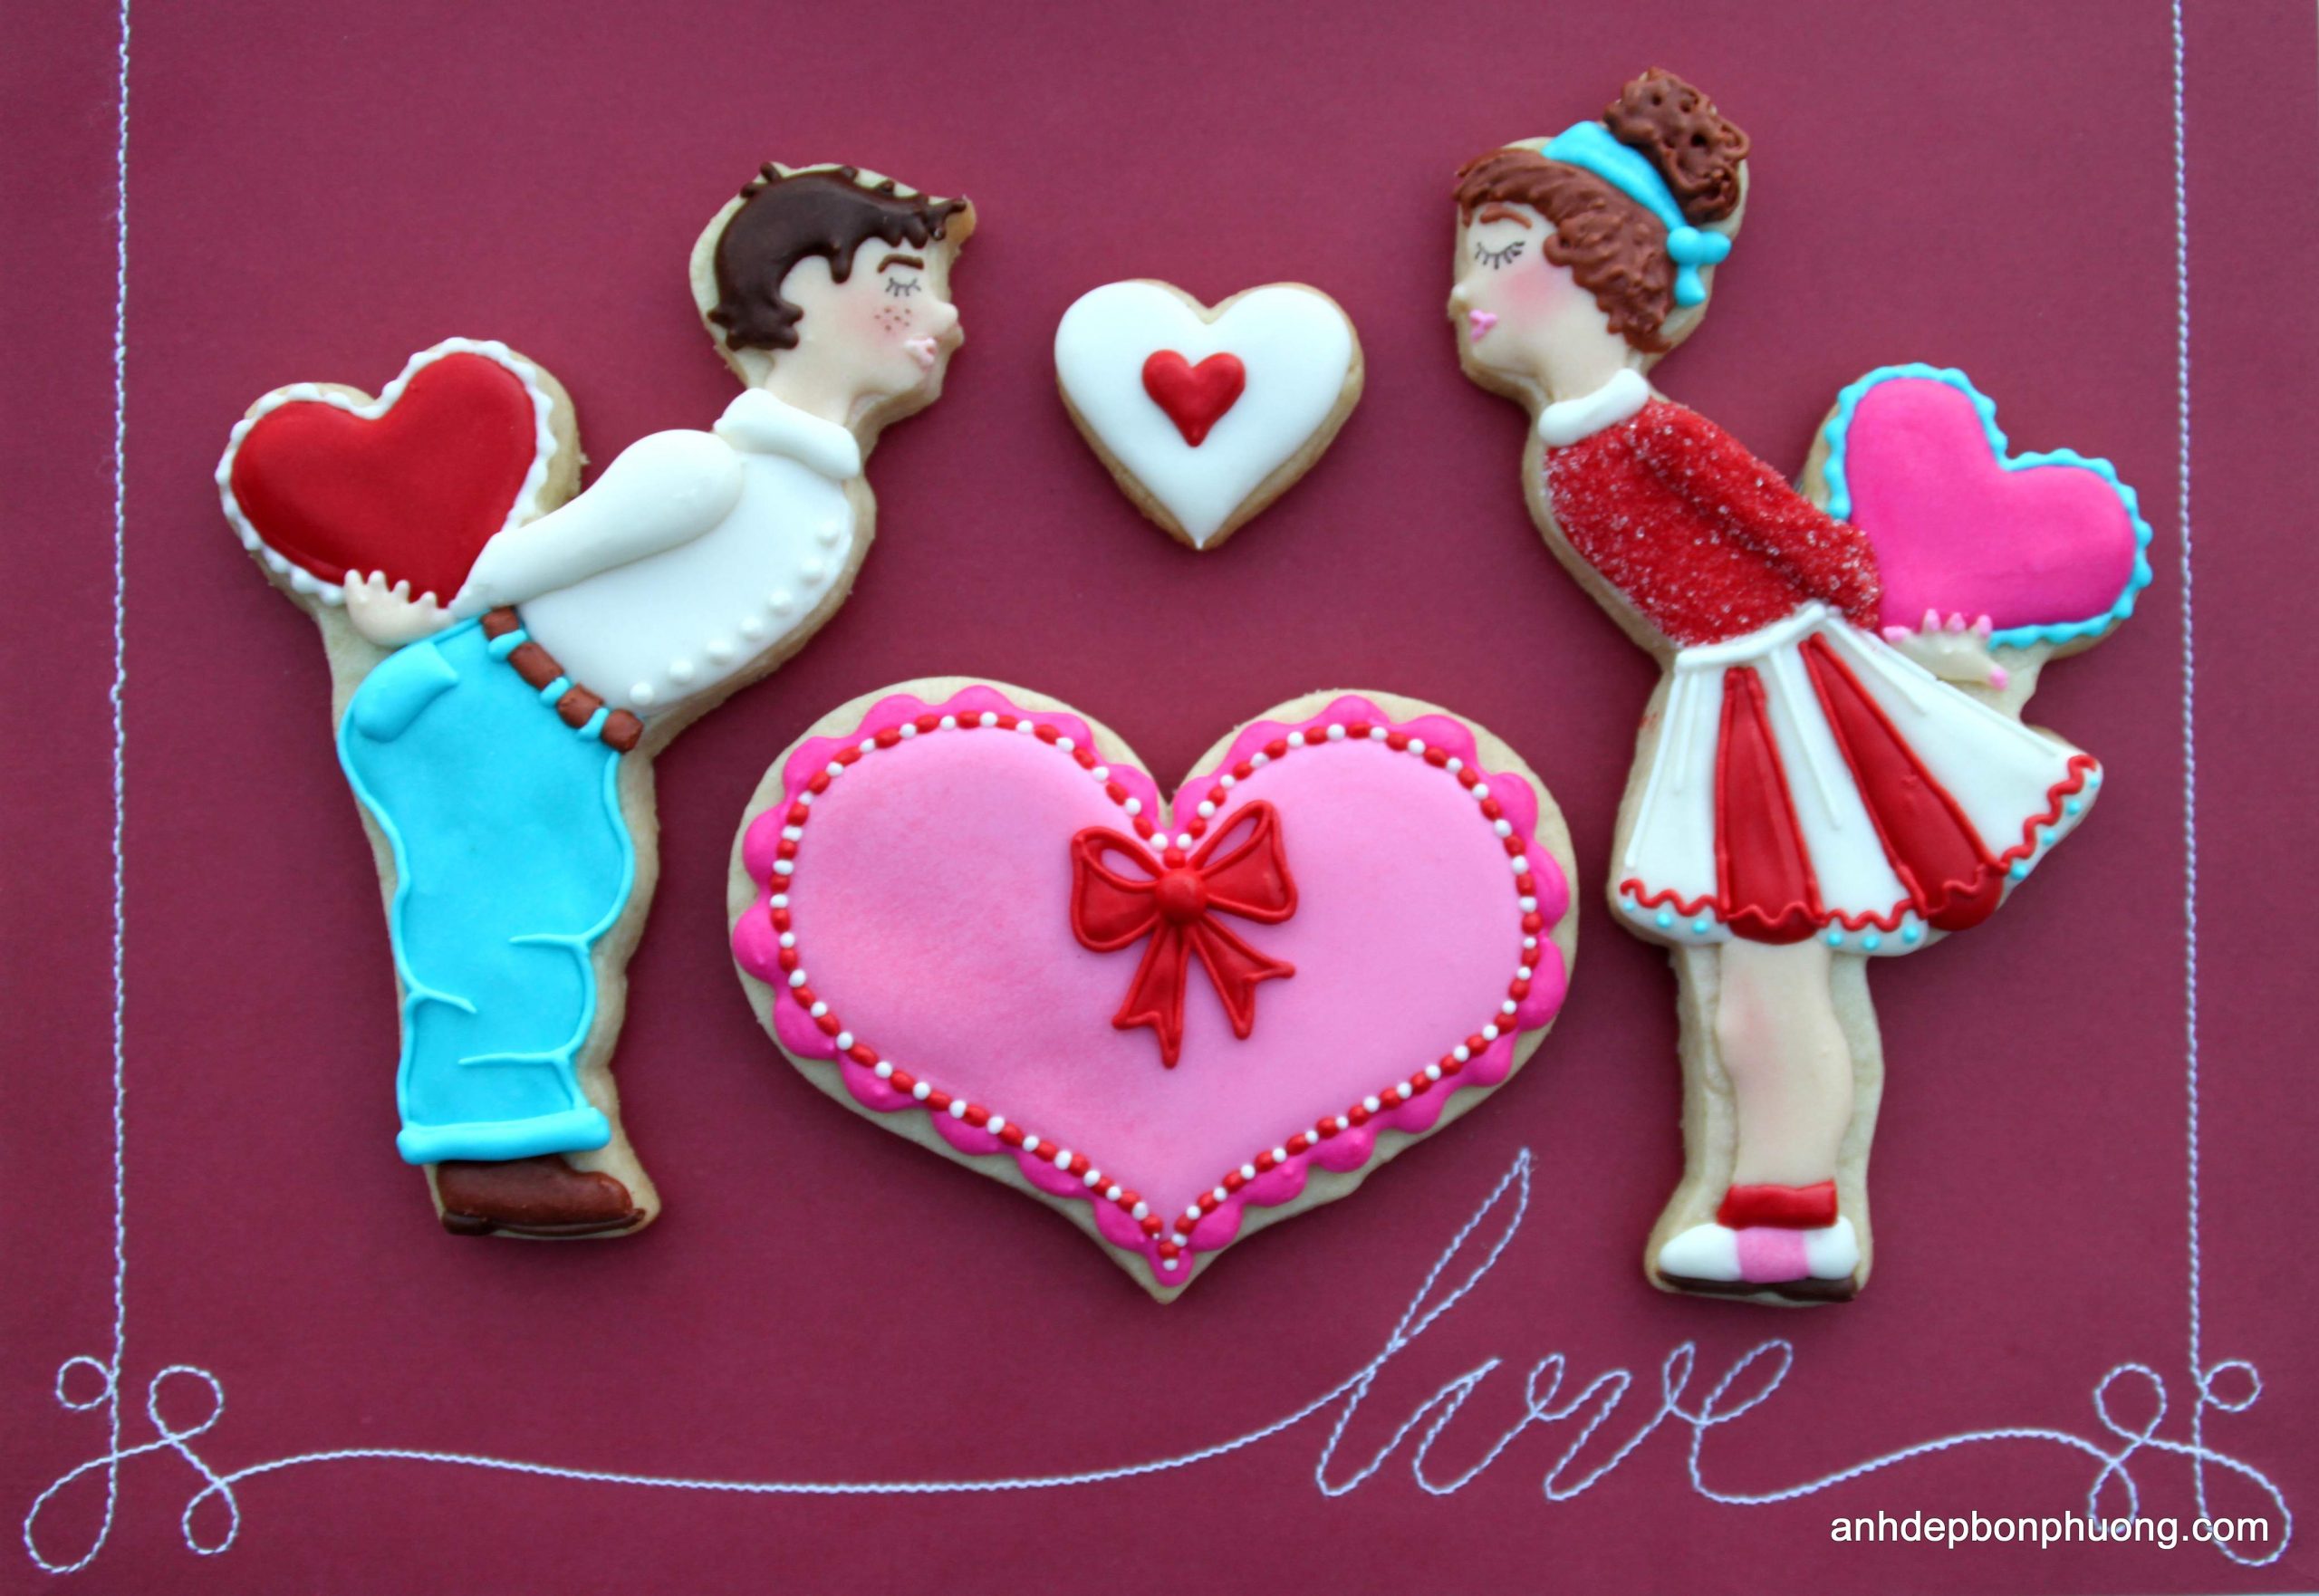 15 Ảnh Kẹo Mút Hình Trái Tim Cho Ngày Tình Nhân Valentine - Ảnh Đẹp Bốn  Phương